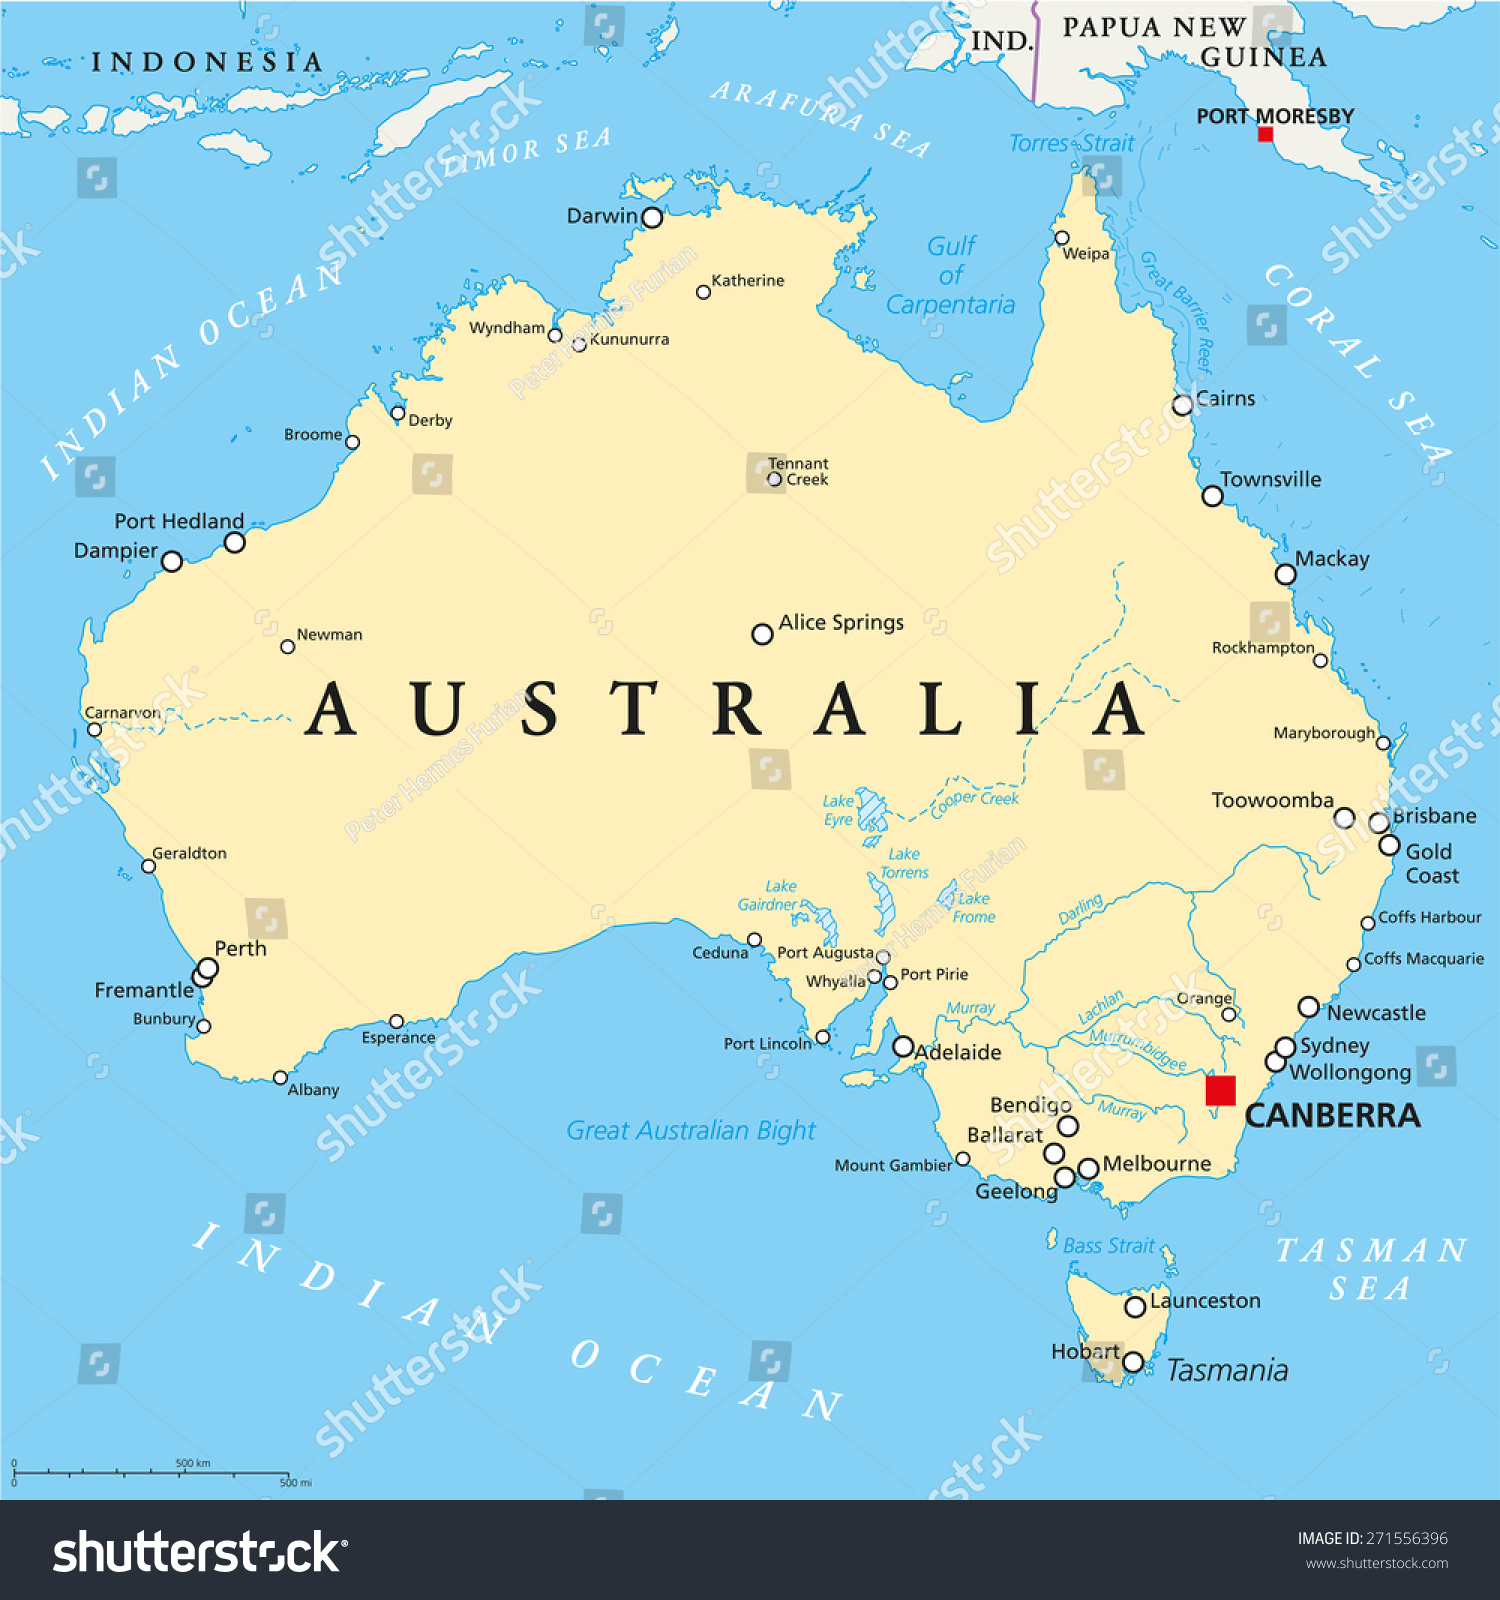 澳大利亚首都堪培拉政治地图,国界,重要城市,河